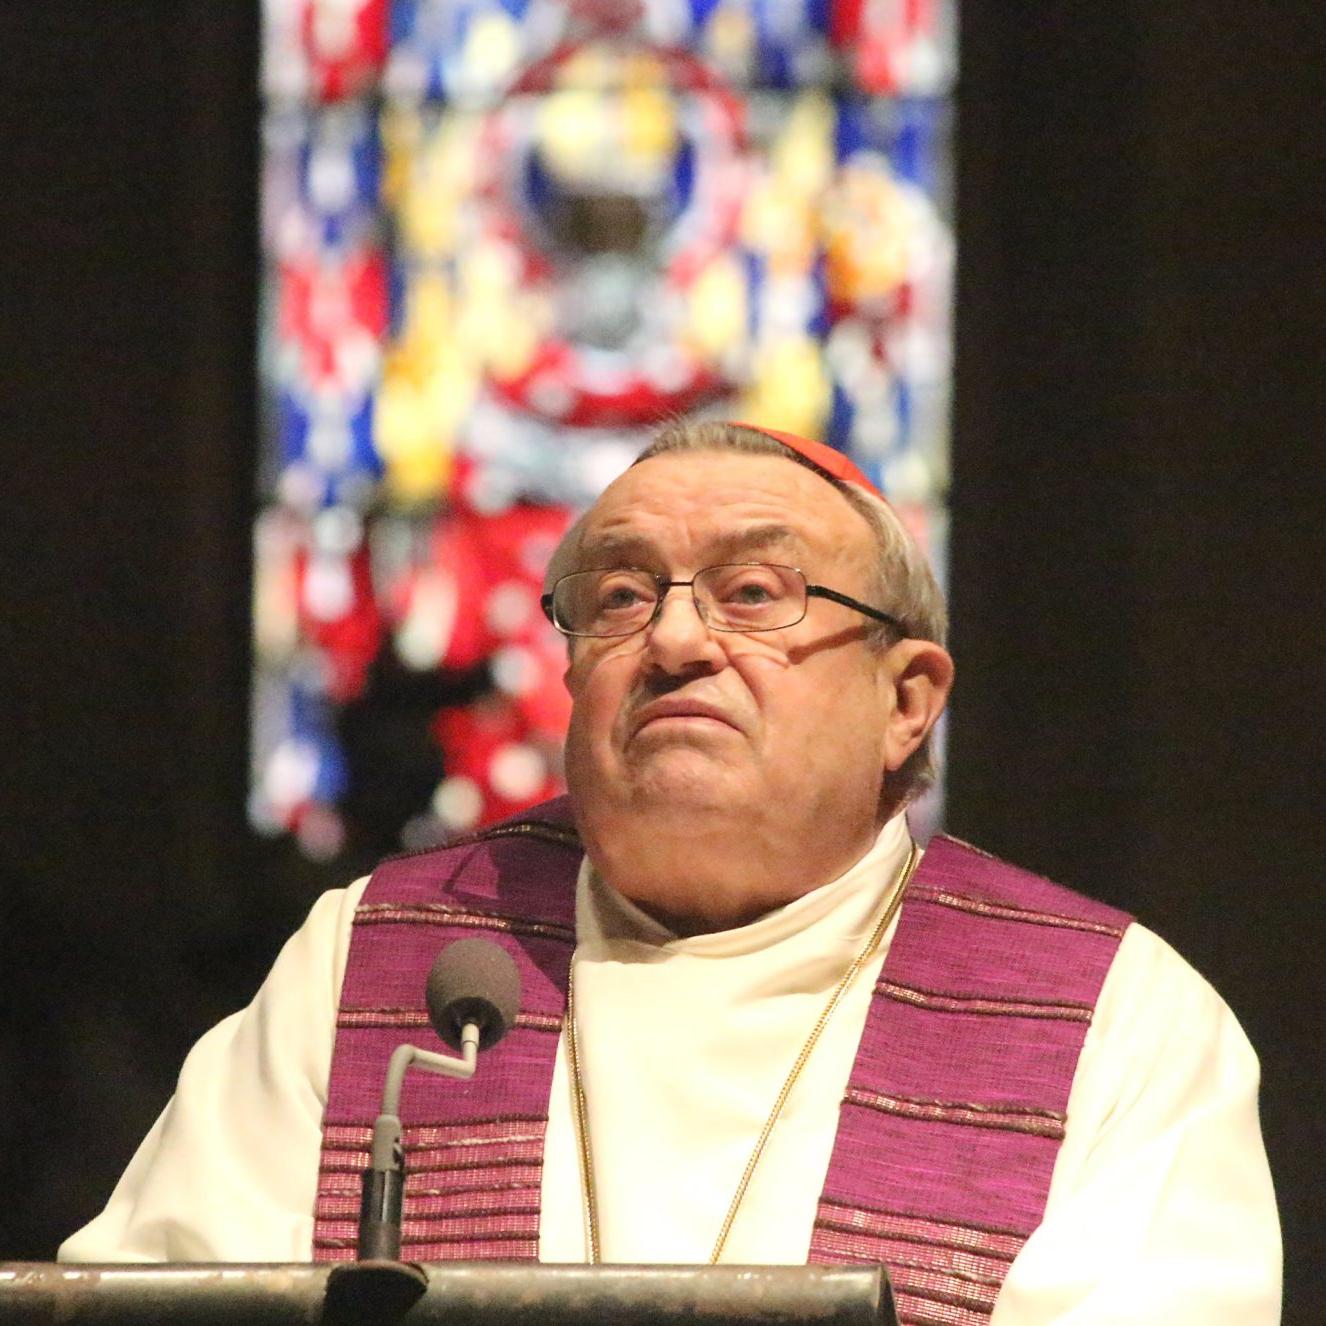 Mainz, 9. März 2014: Kardinal Lehmann eröffnete die Reihe der Fastenpredigten über Papst Franziskus.